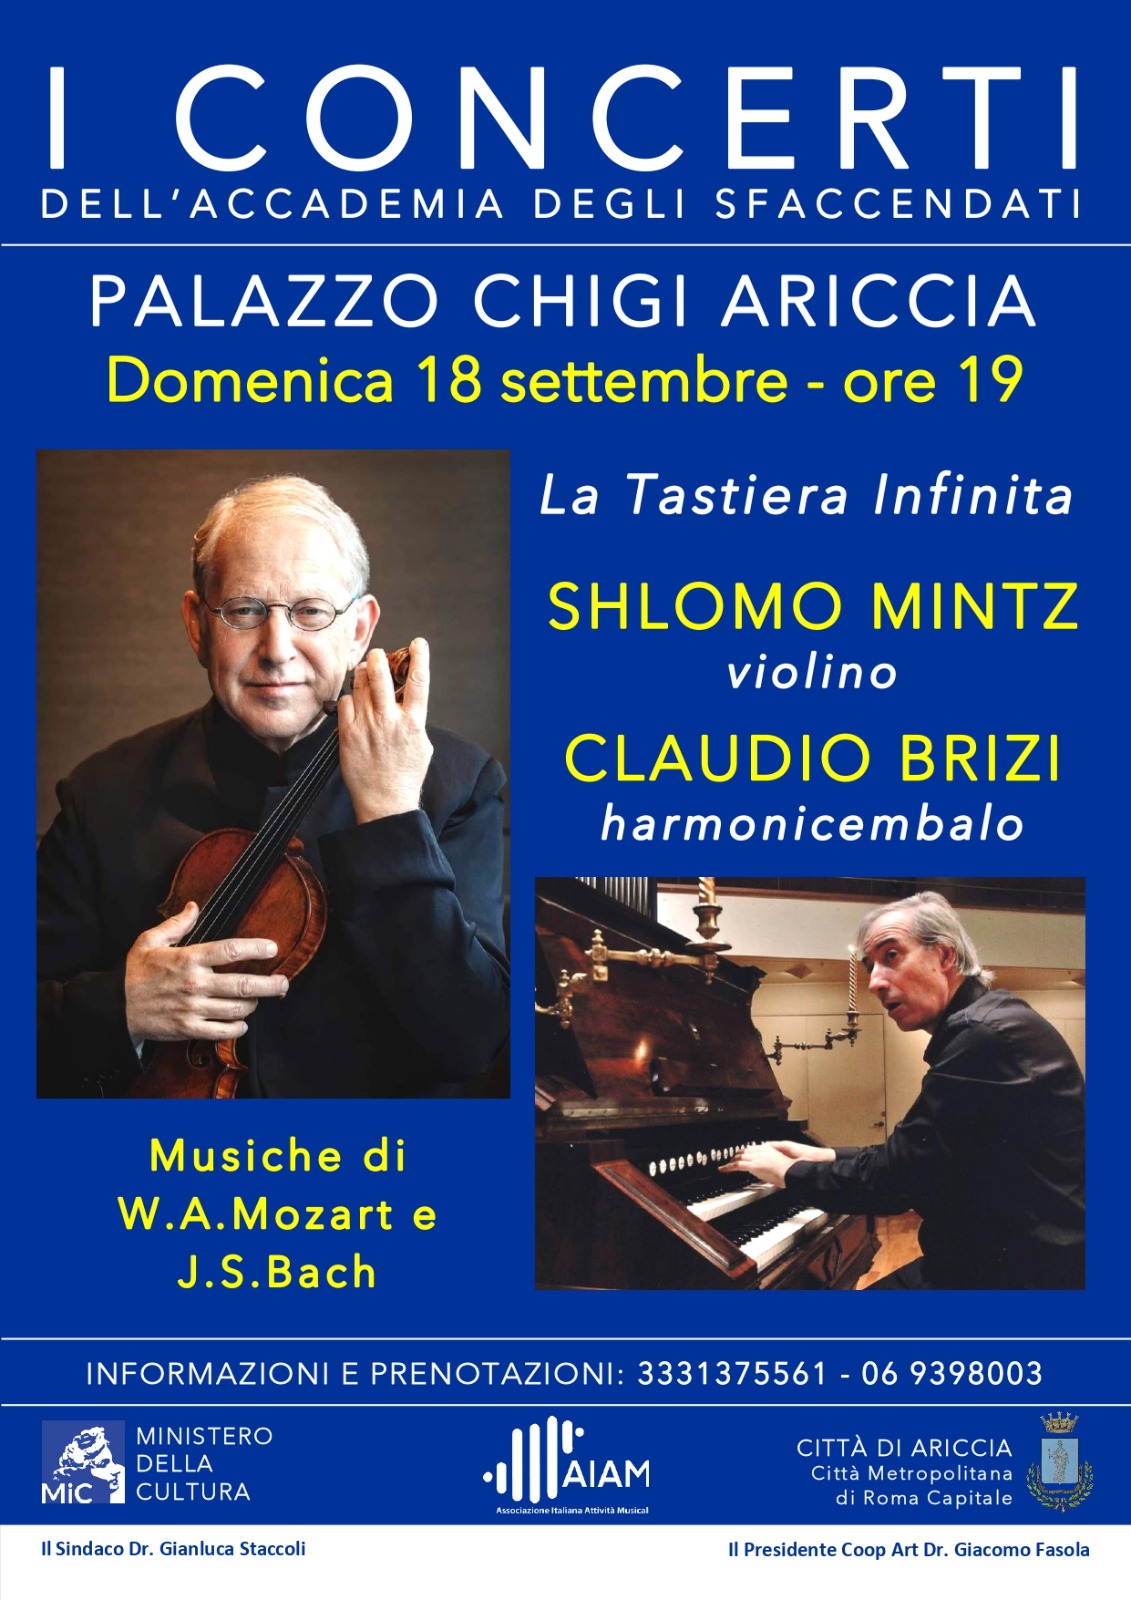 Il grande violinista Shlomo Mintz al Palazzo Chigi di Ariccia per gli “Sfaccendati”